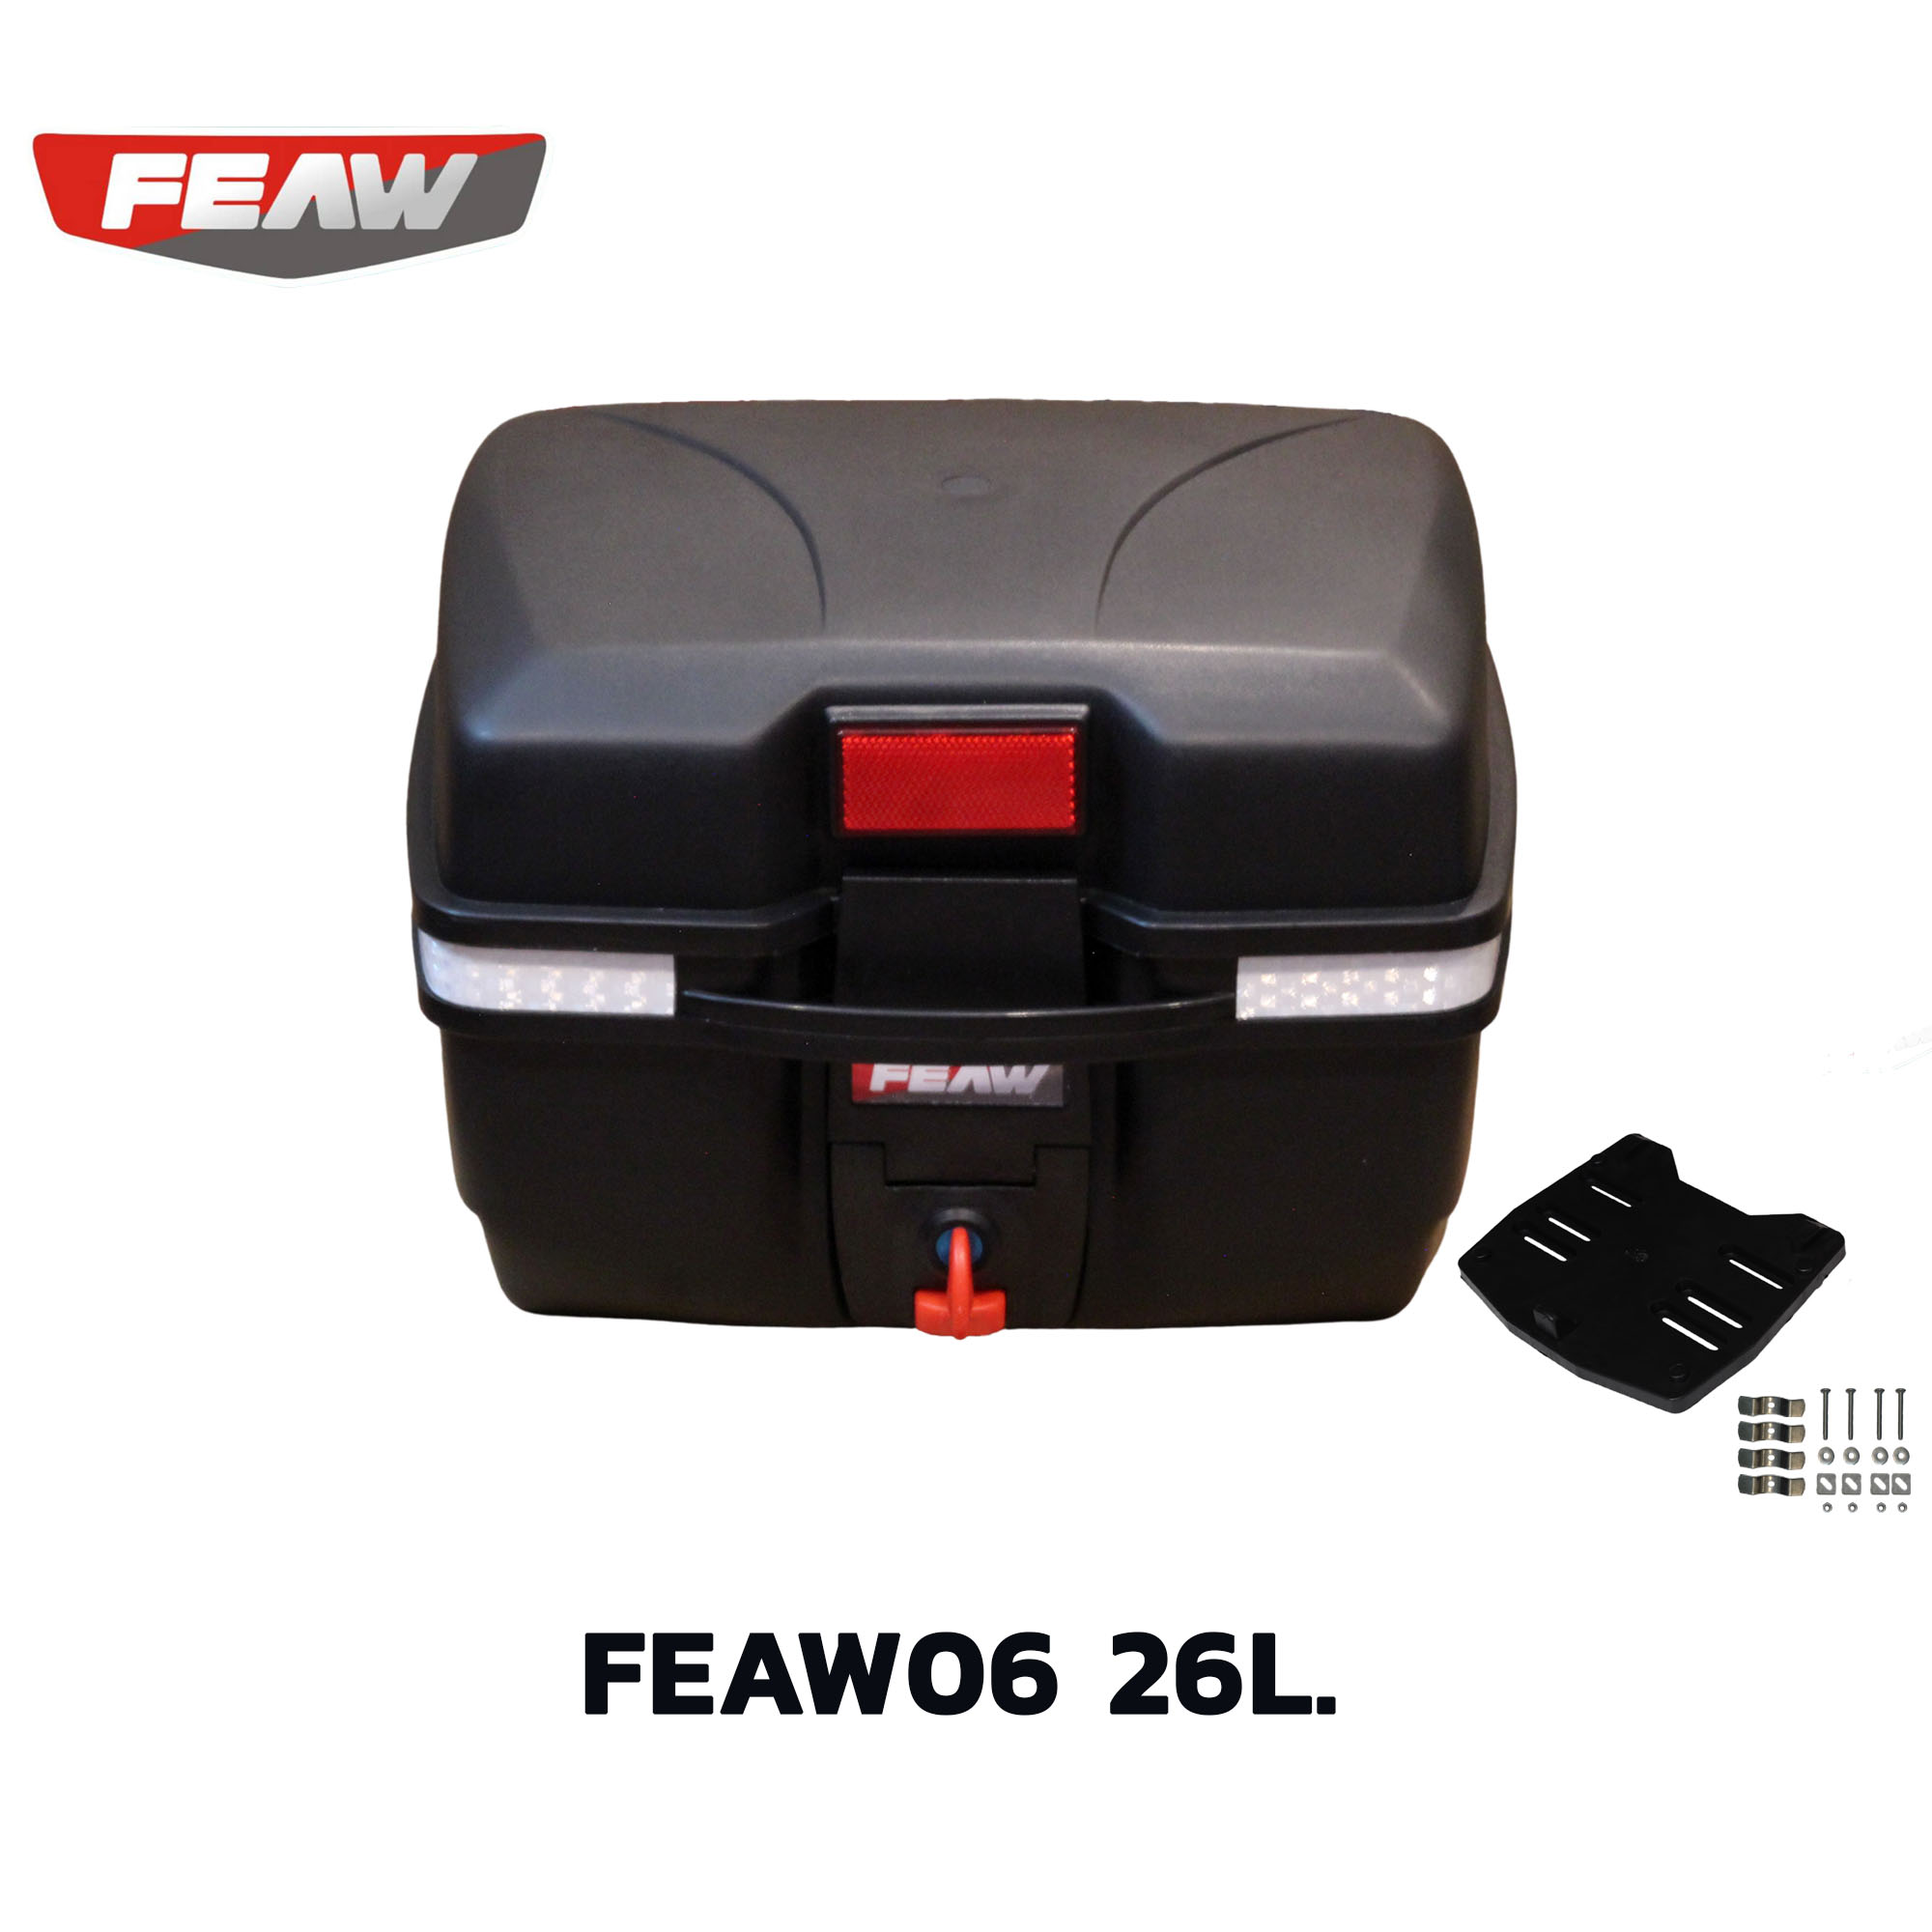 กล่องท้ายเฟี้ยว FW06 25 ลิตรพร้อมเบาะพิงหลัง FEAW(ของแท้อย่างหนา)สวย ถูก ดี มีประกัน กล่องหลังมอเตอร์ไซค์